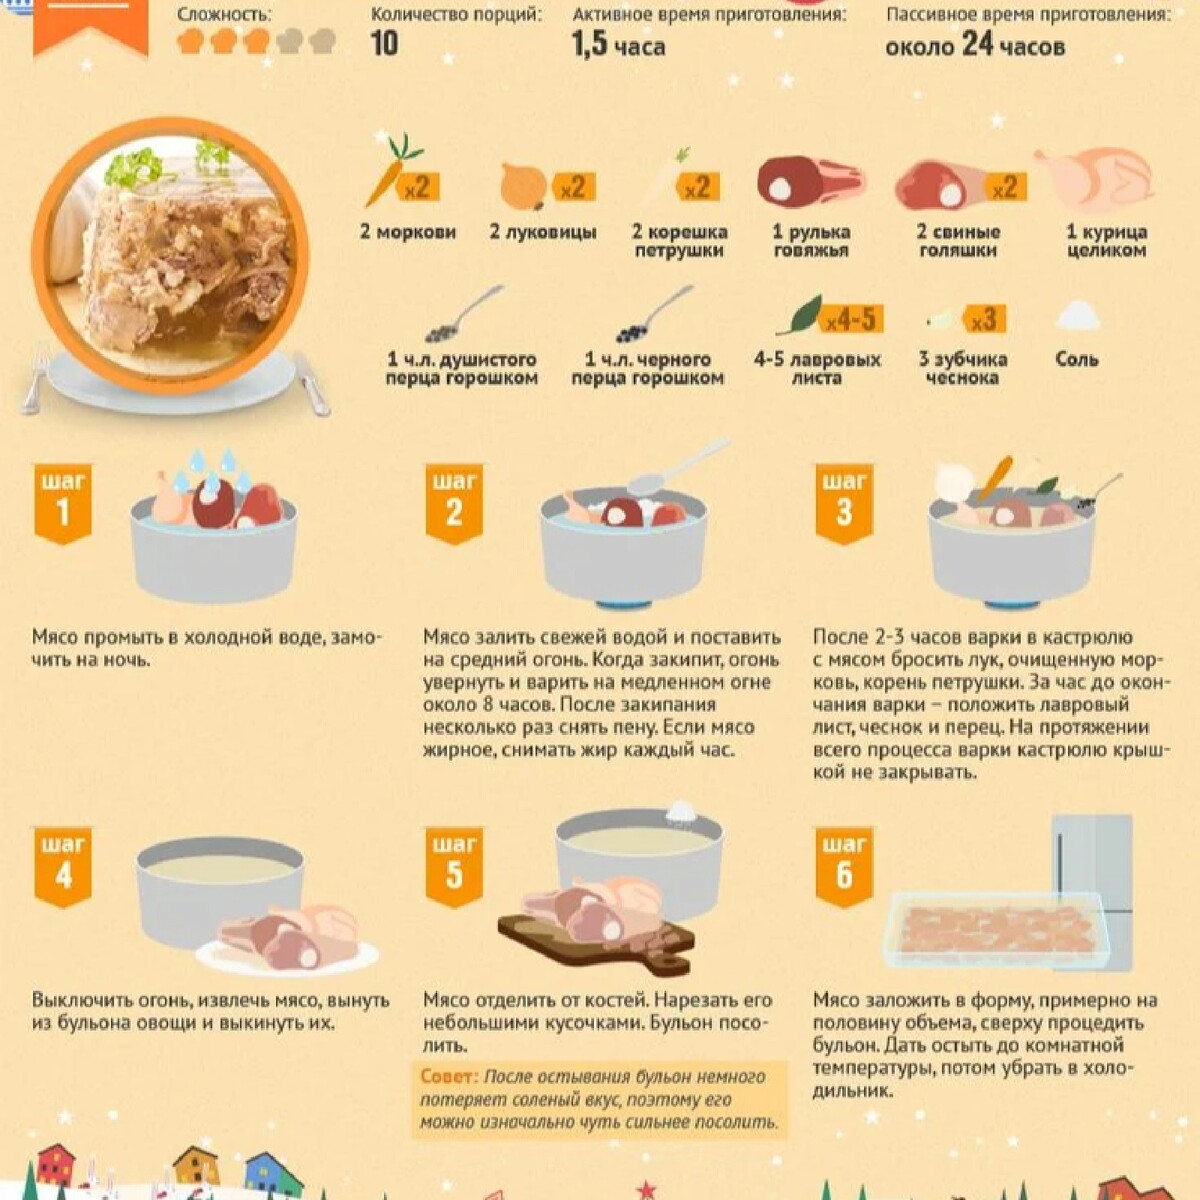 Сколько надо варить мясо. Рецепты в инфографике. Инфографика рецепт. Рецепты в картинках. Инфографика блюда.